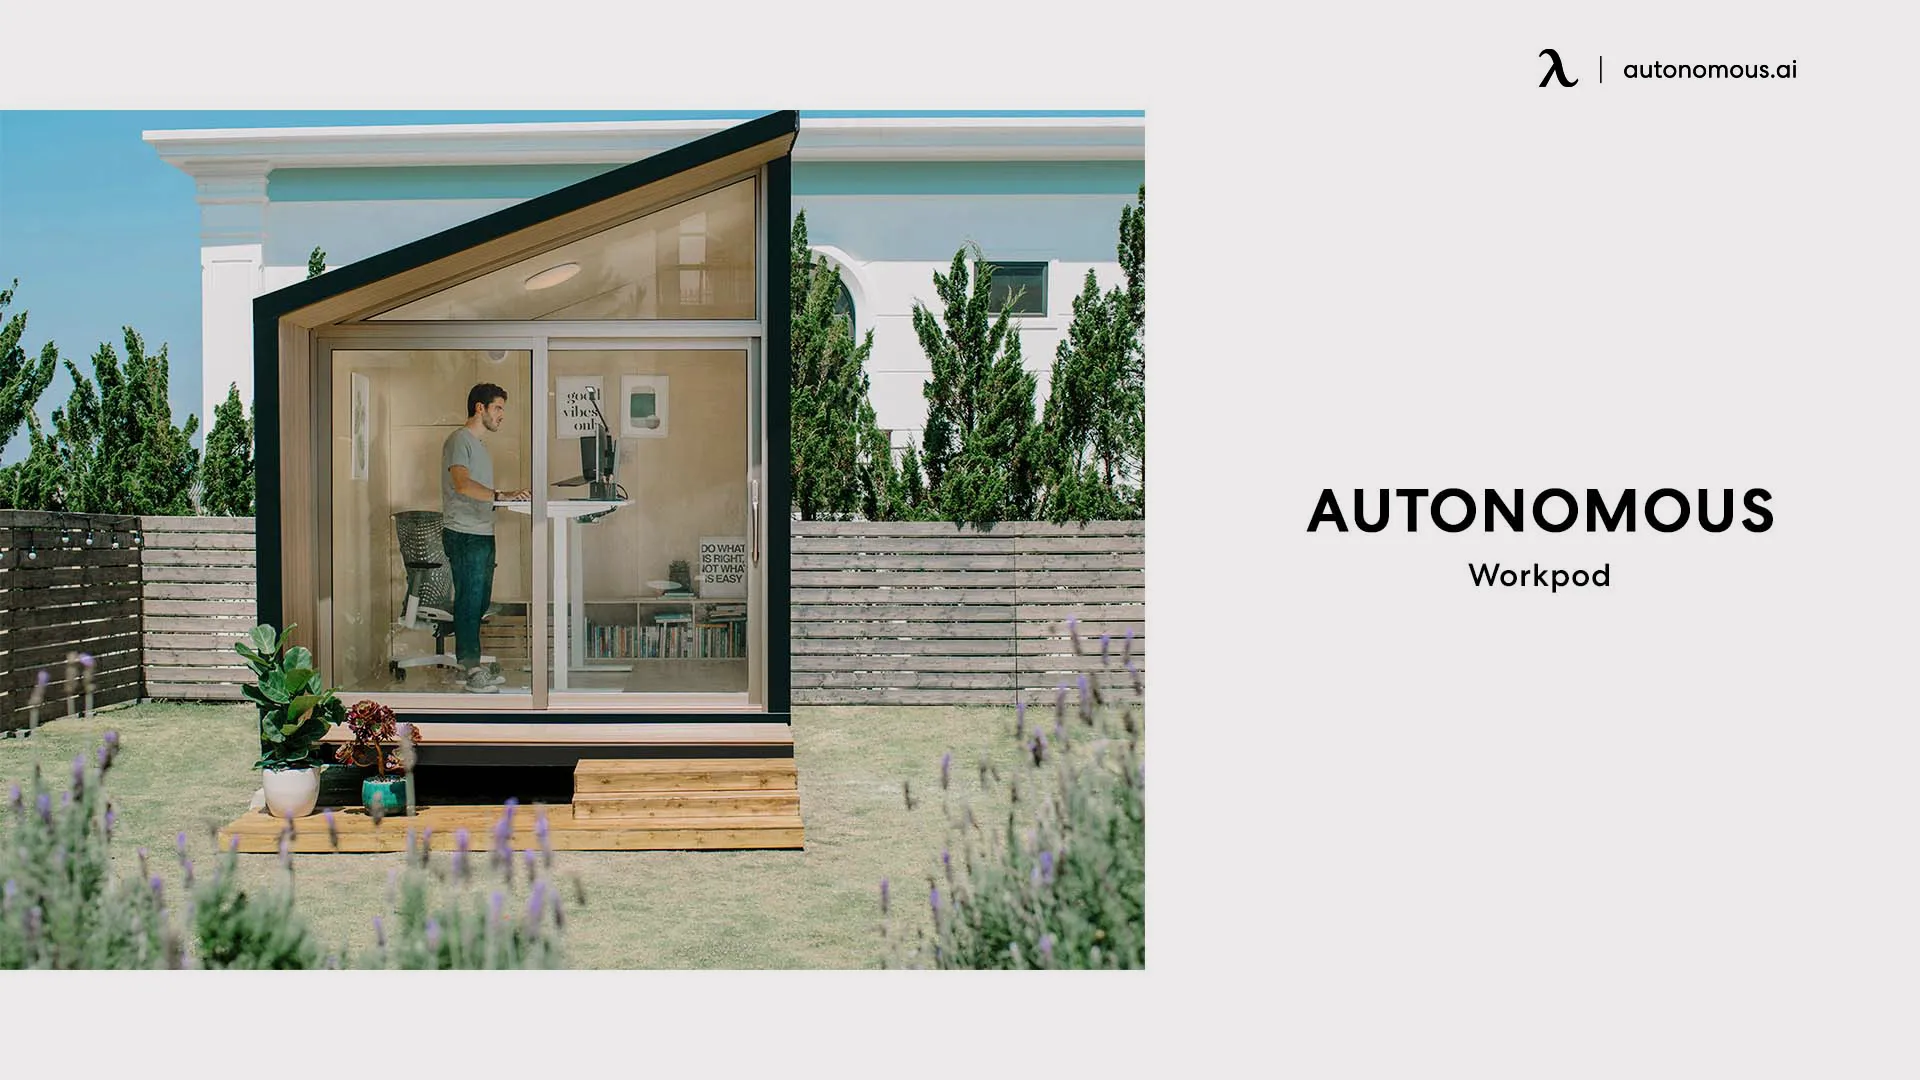 Autonomous WorkPod backyard shed